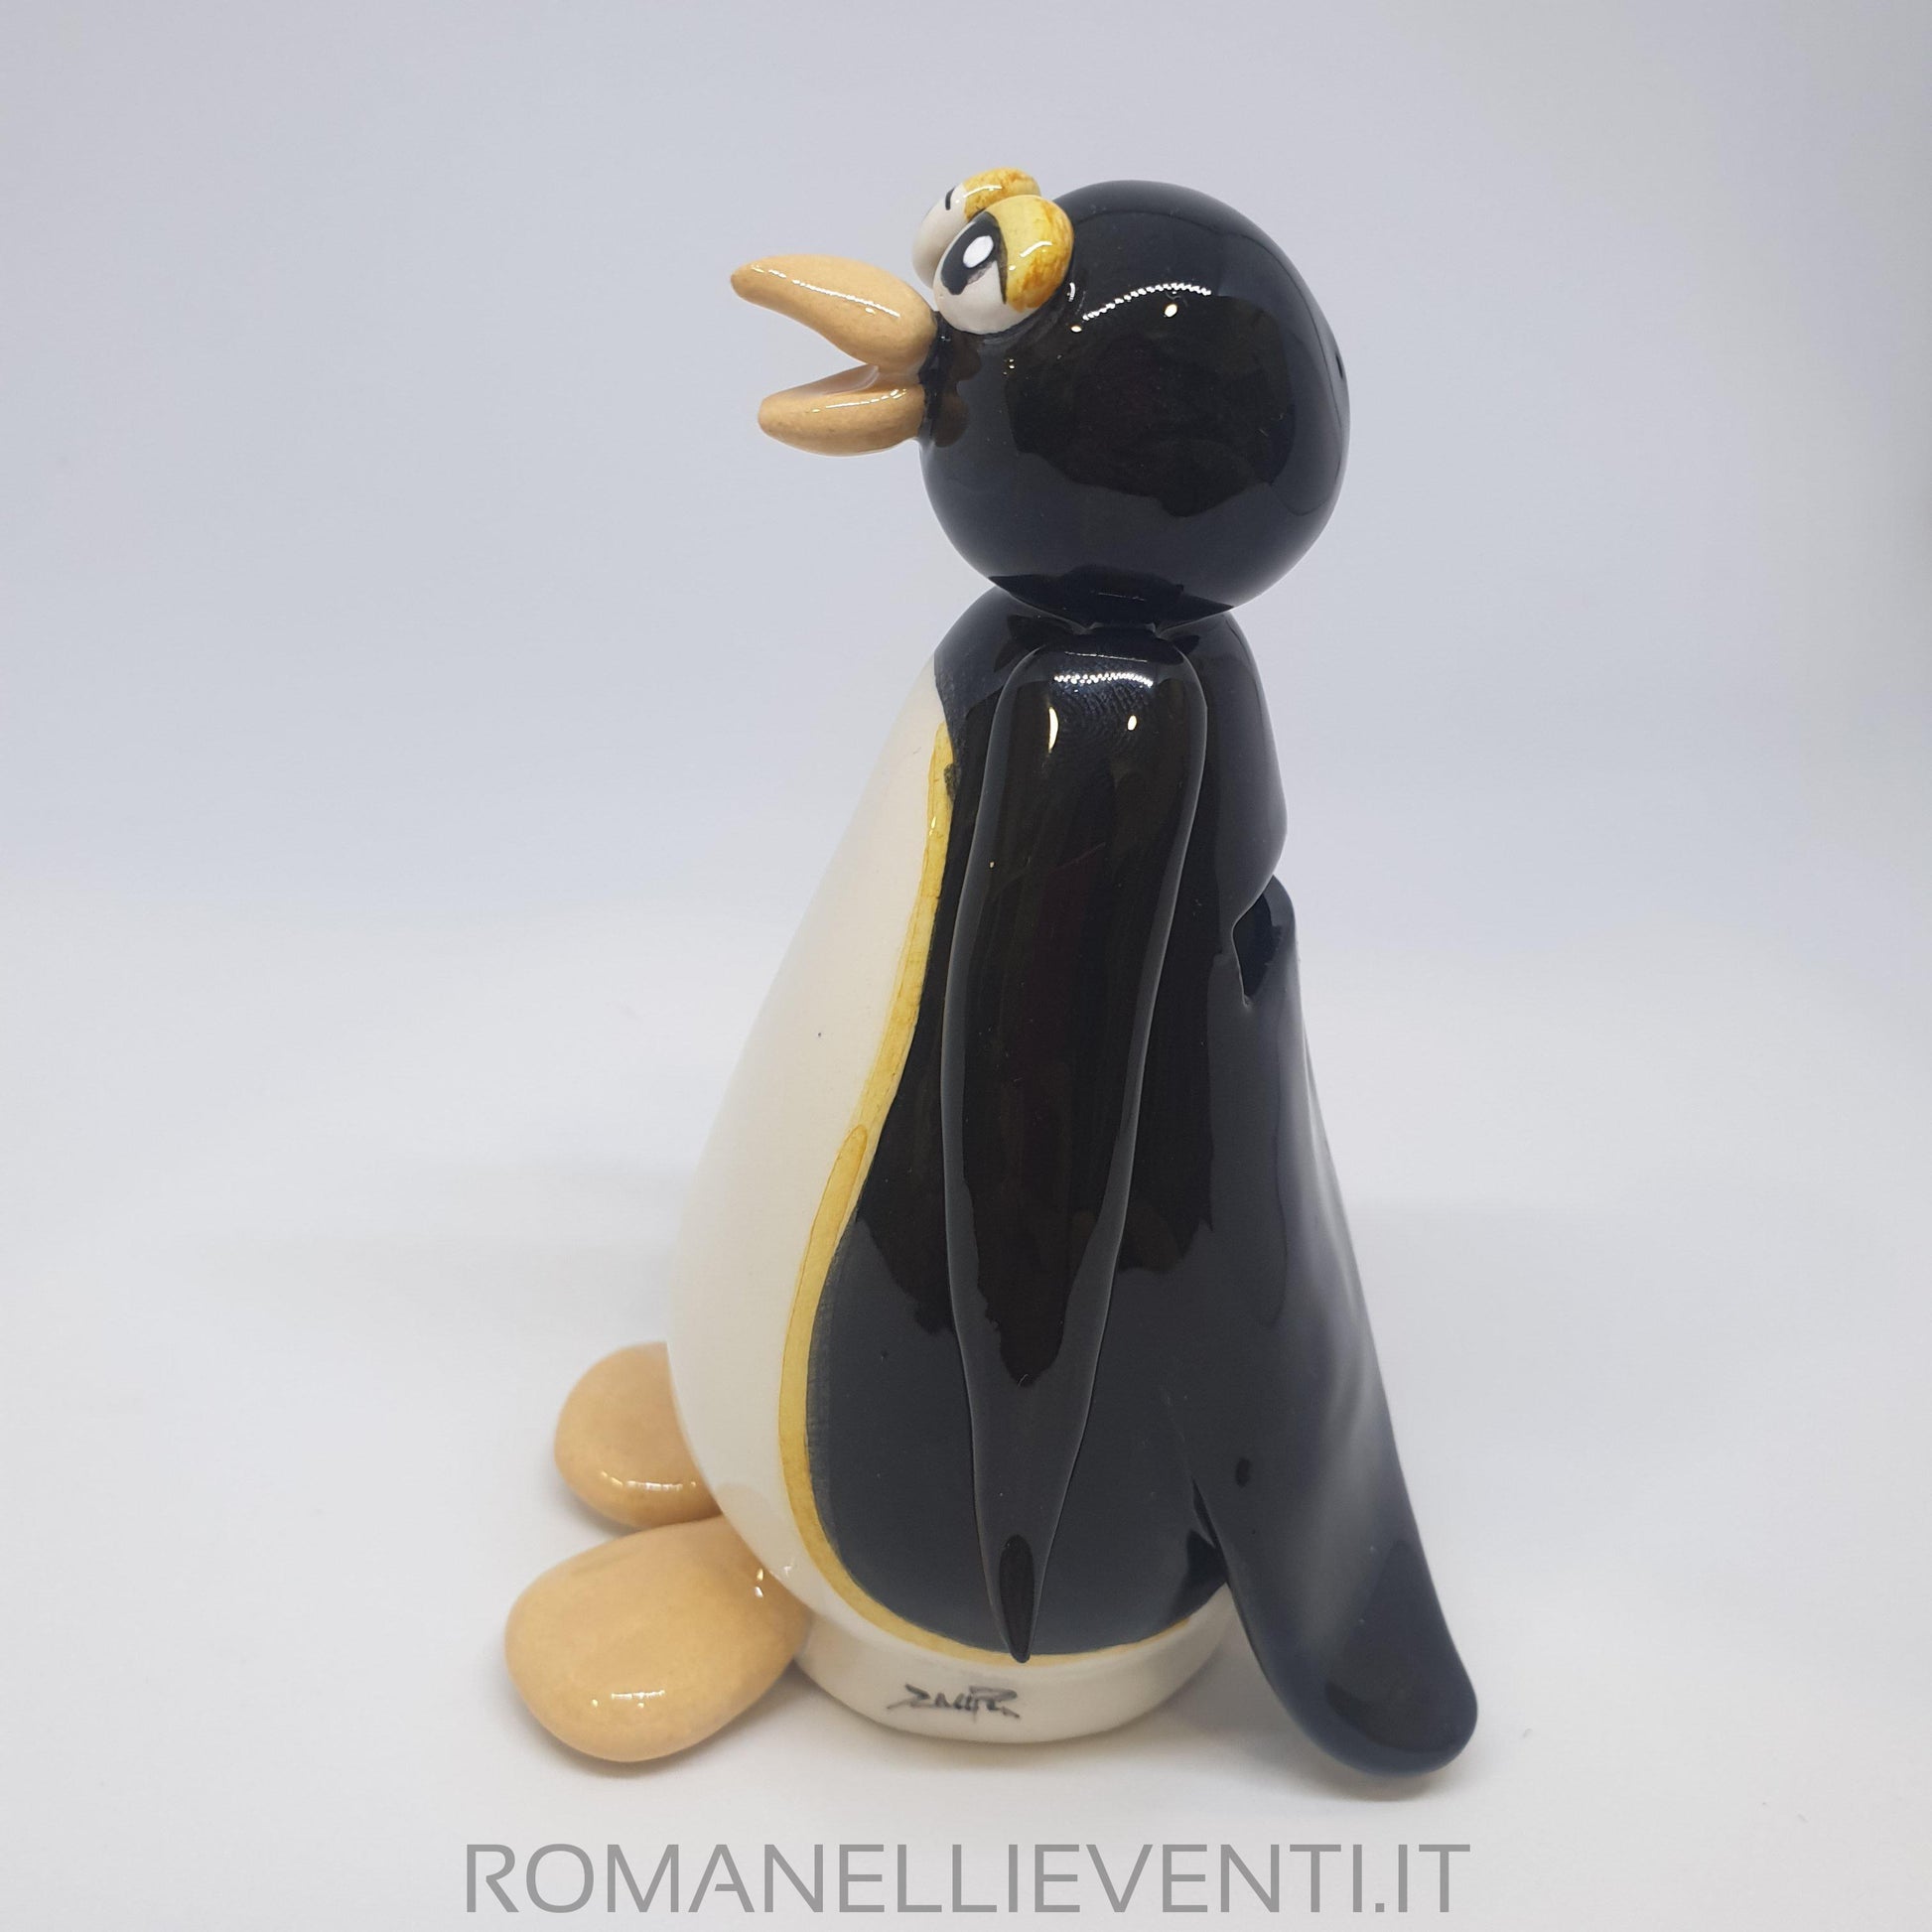 Salvadanaio Pinguino-Zampiva-Romanelli Eventi